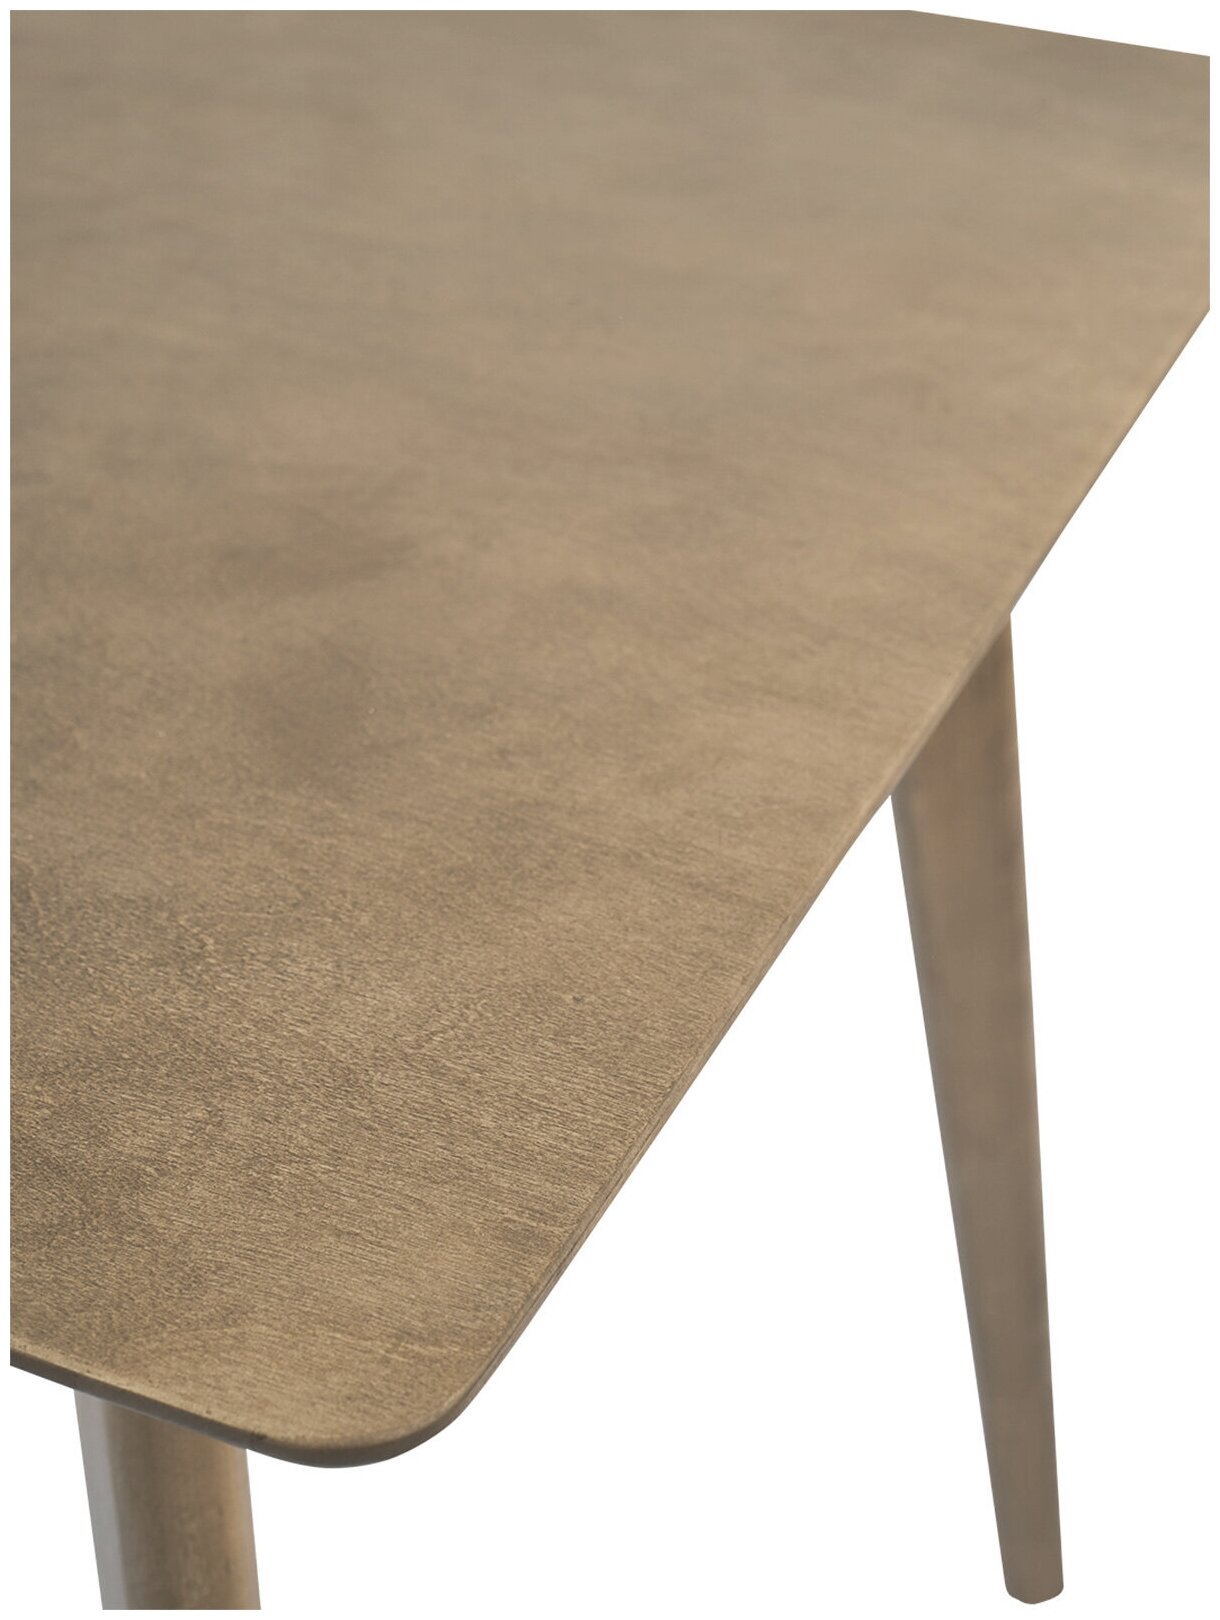 Стол Обеденный Пегас Classic(102*61)см прямоугольный, нераздвижной, деревянный - Дуб золотой - фотография № 9